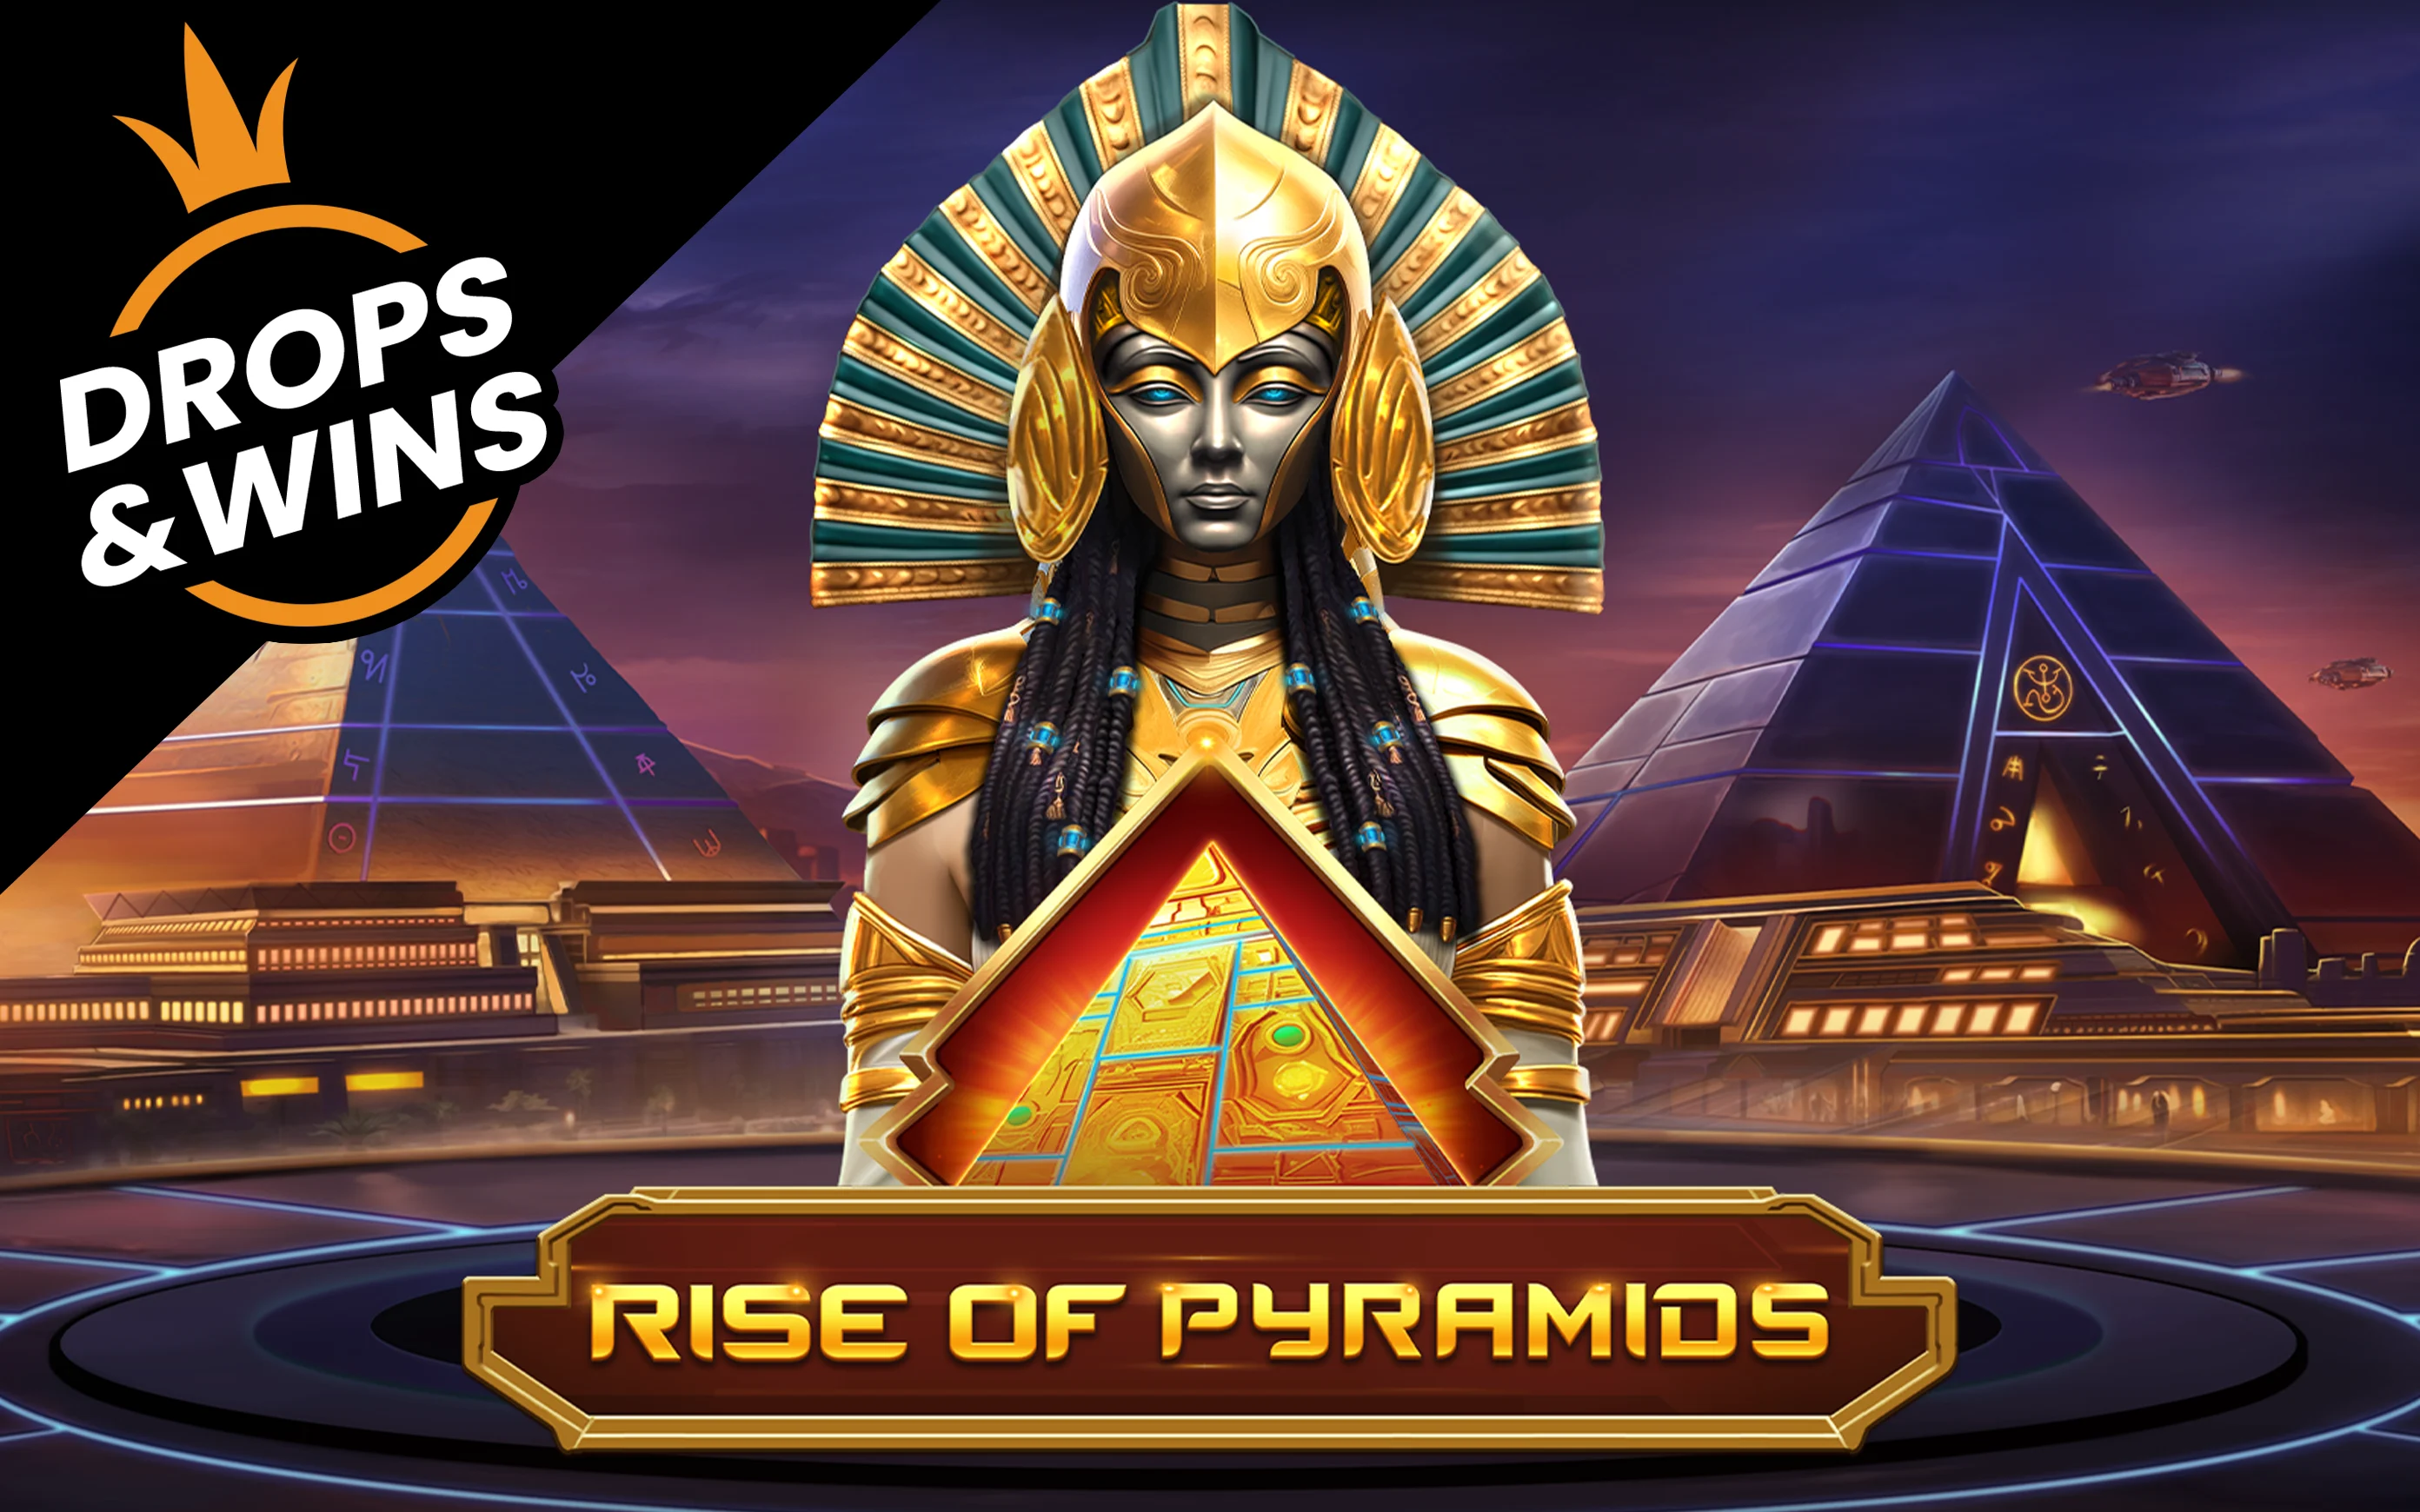 Gioca a Rise of Pyramids sul casino online Starcasino.be